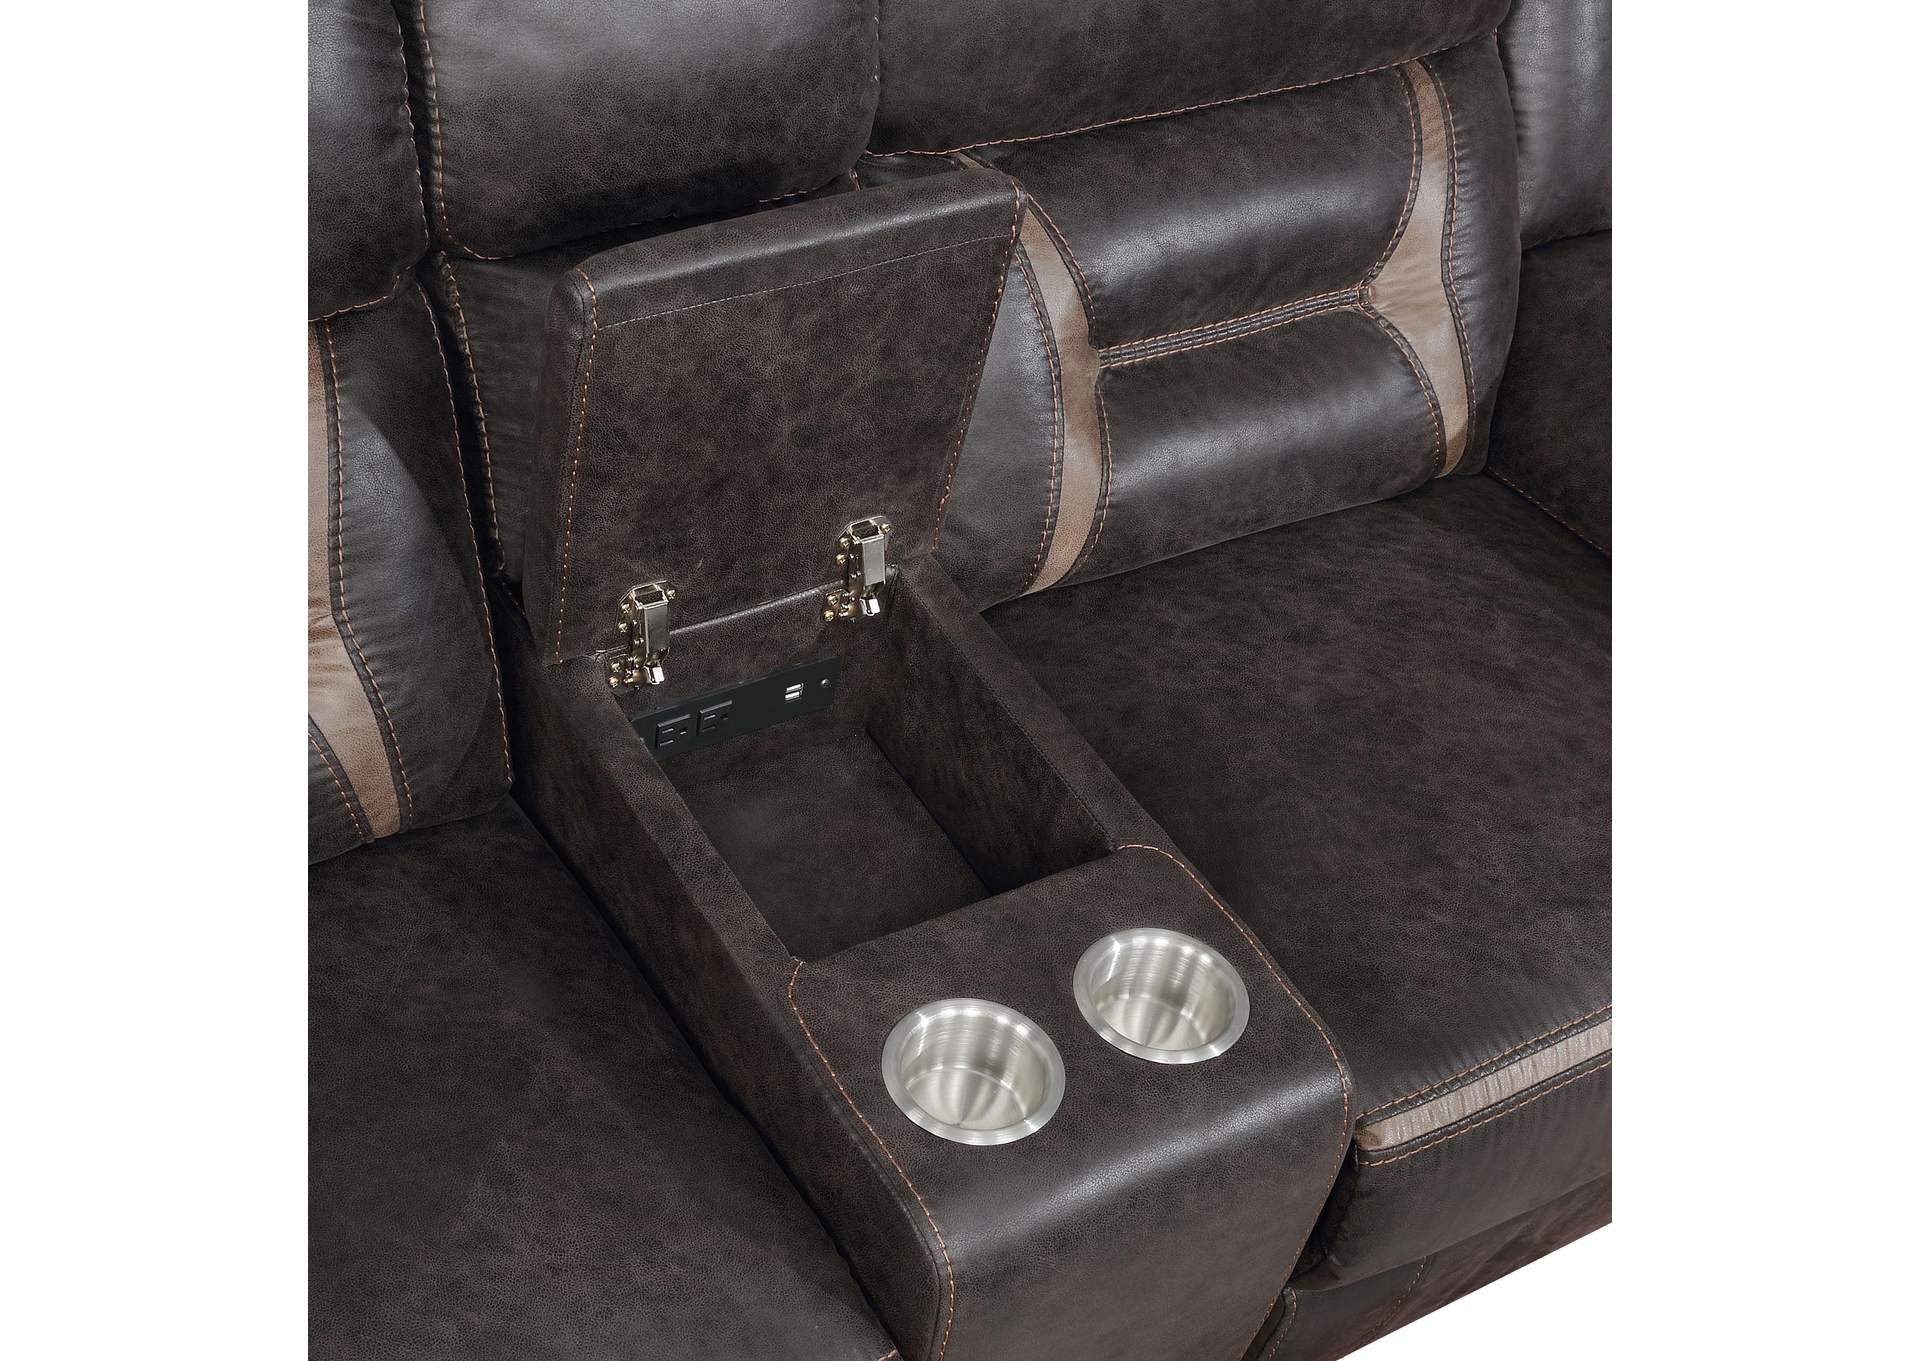 Greer Upholstered Tufted Back Glider Loveseat,Coaster Furniture